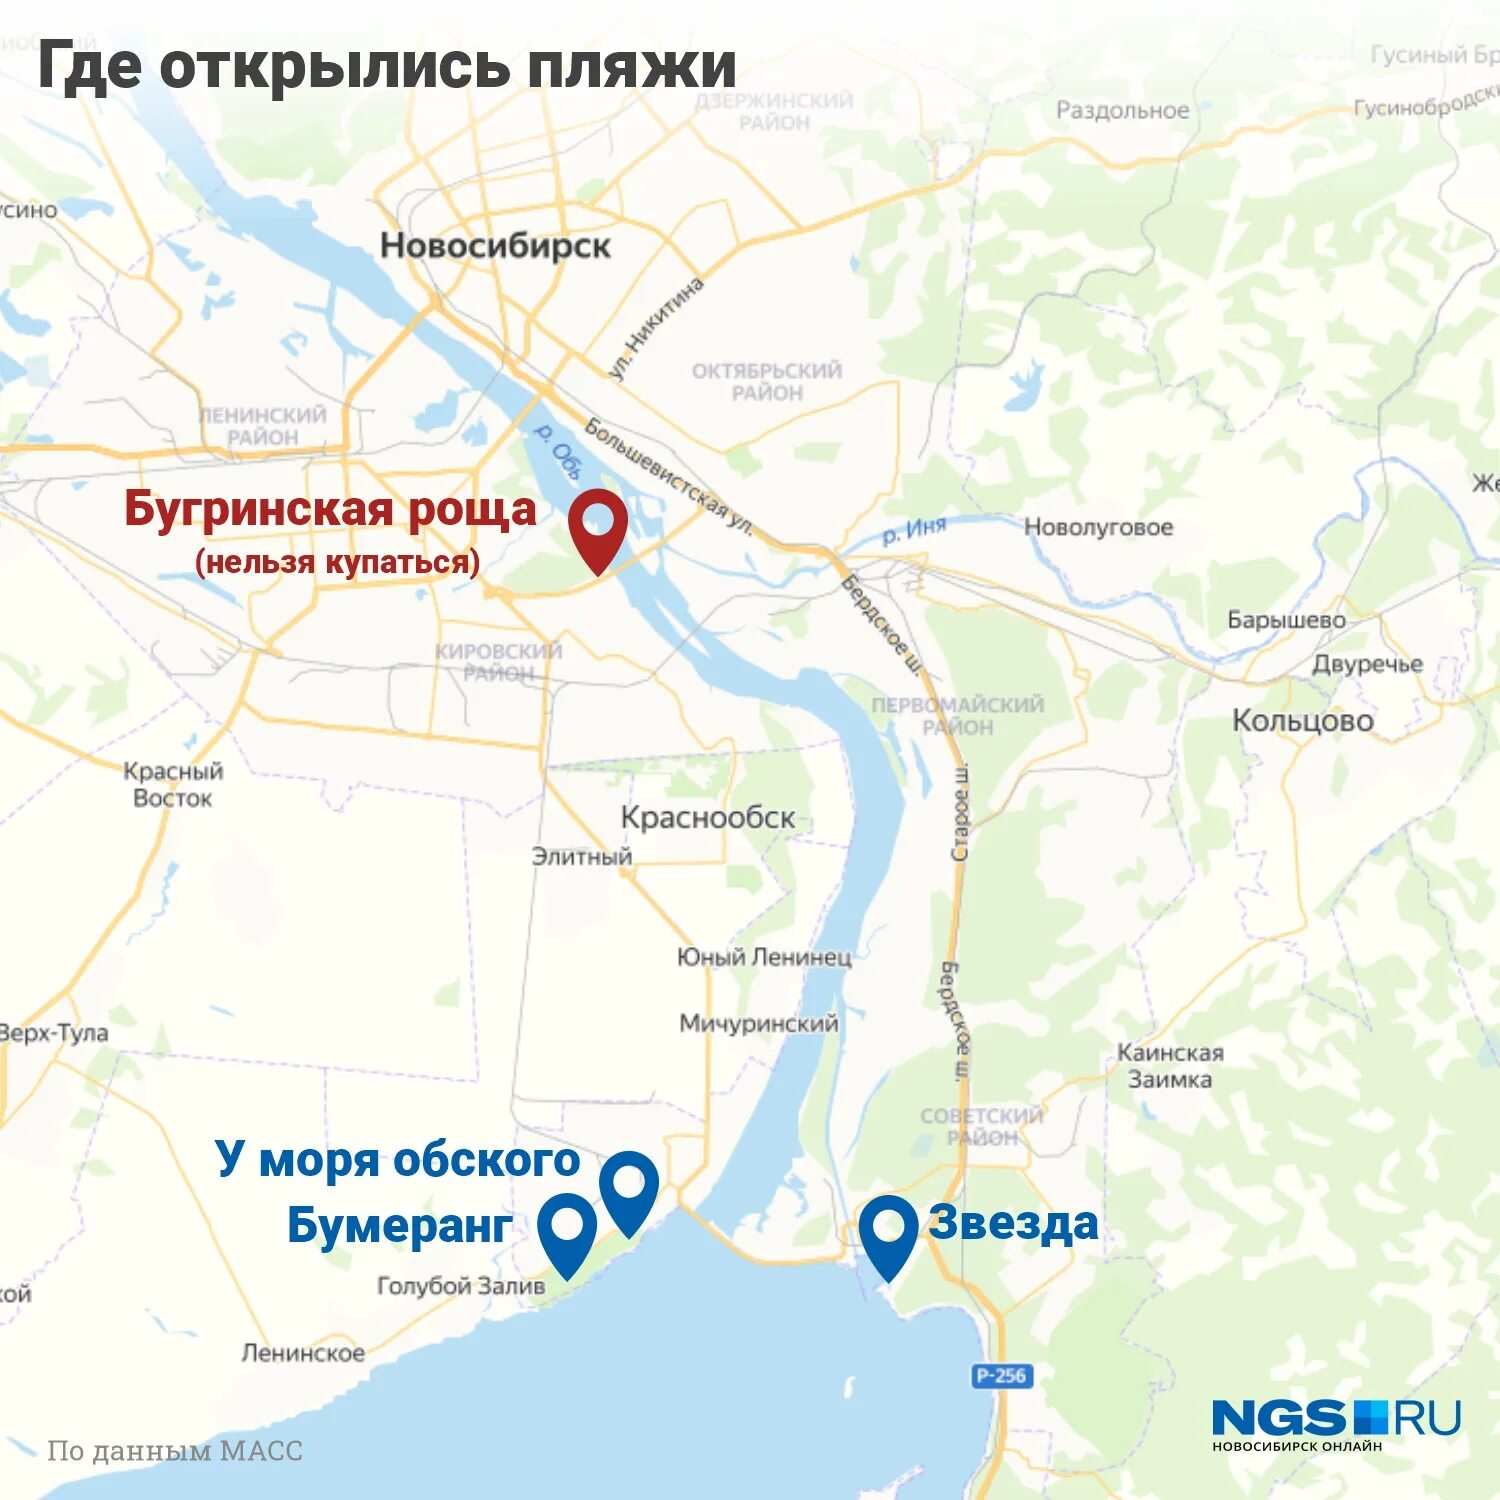 2 берега где находятся. Левый берег правый берег Новосибирск. Левый берег Новосибирск карта. Где Новосибирск. Новосибирск на карте.